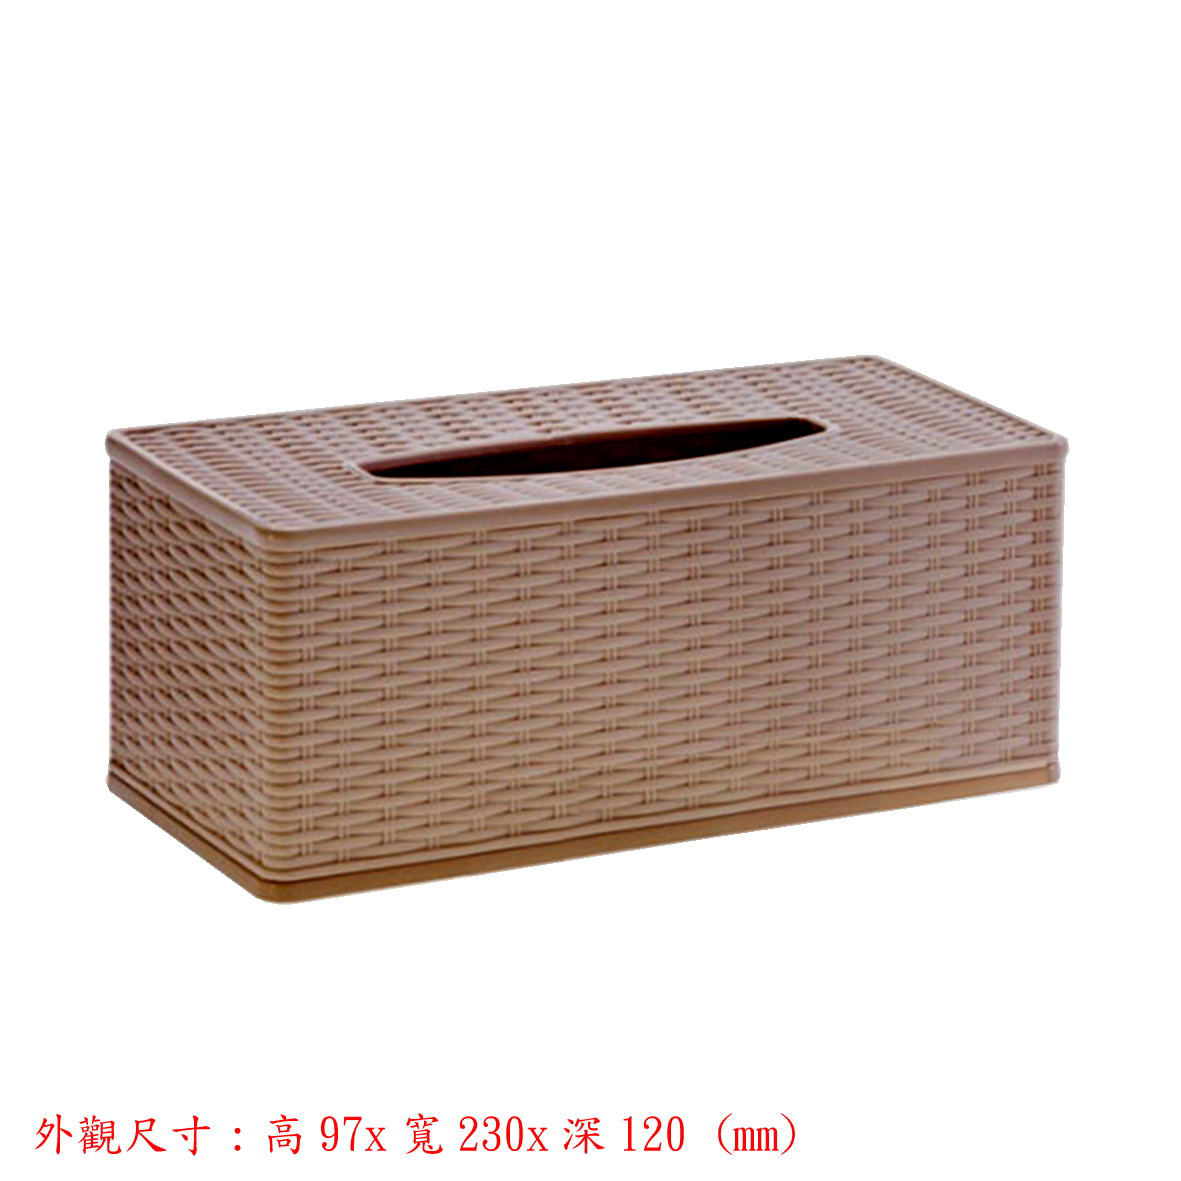 抽取式面紙盒-籐編紋(棕色)